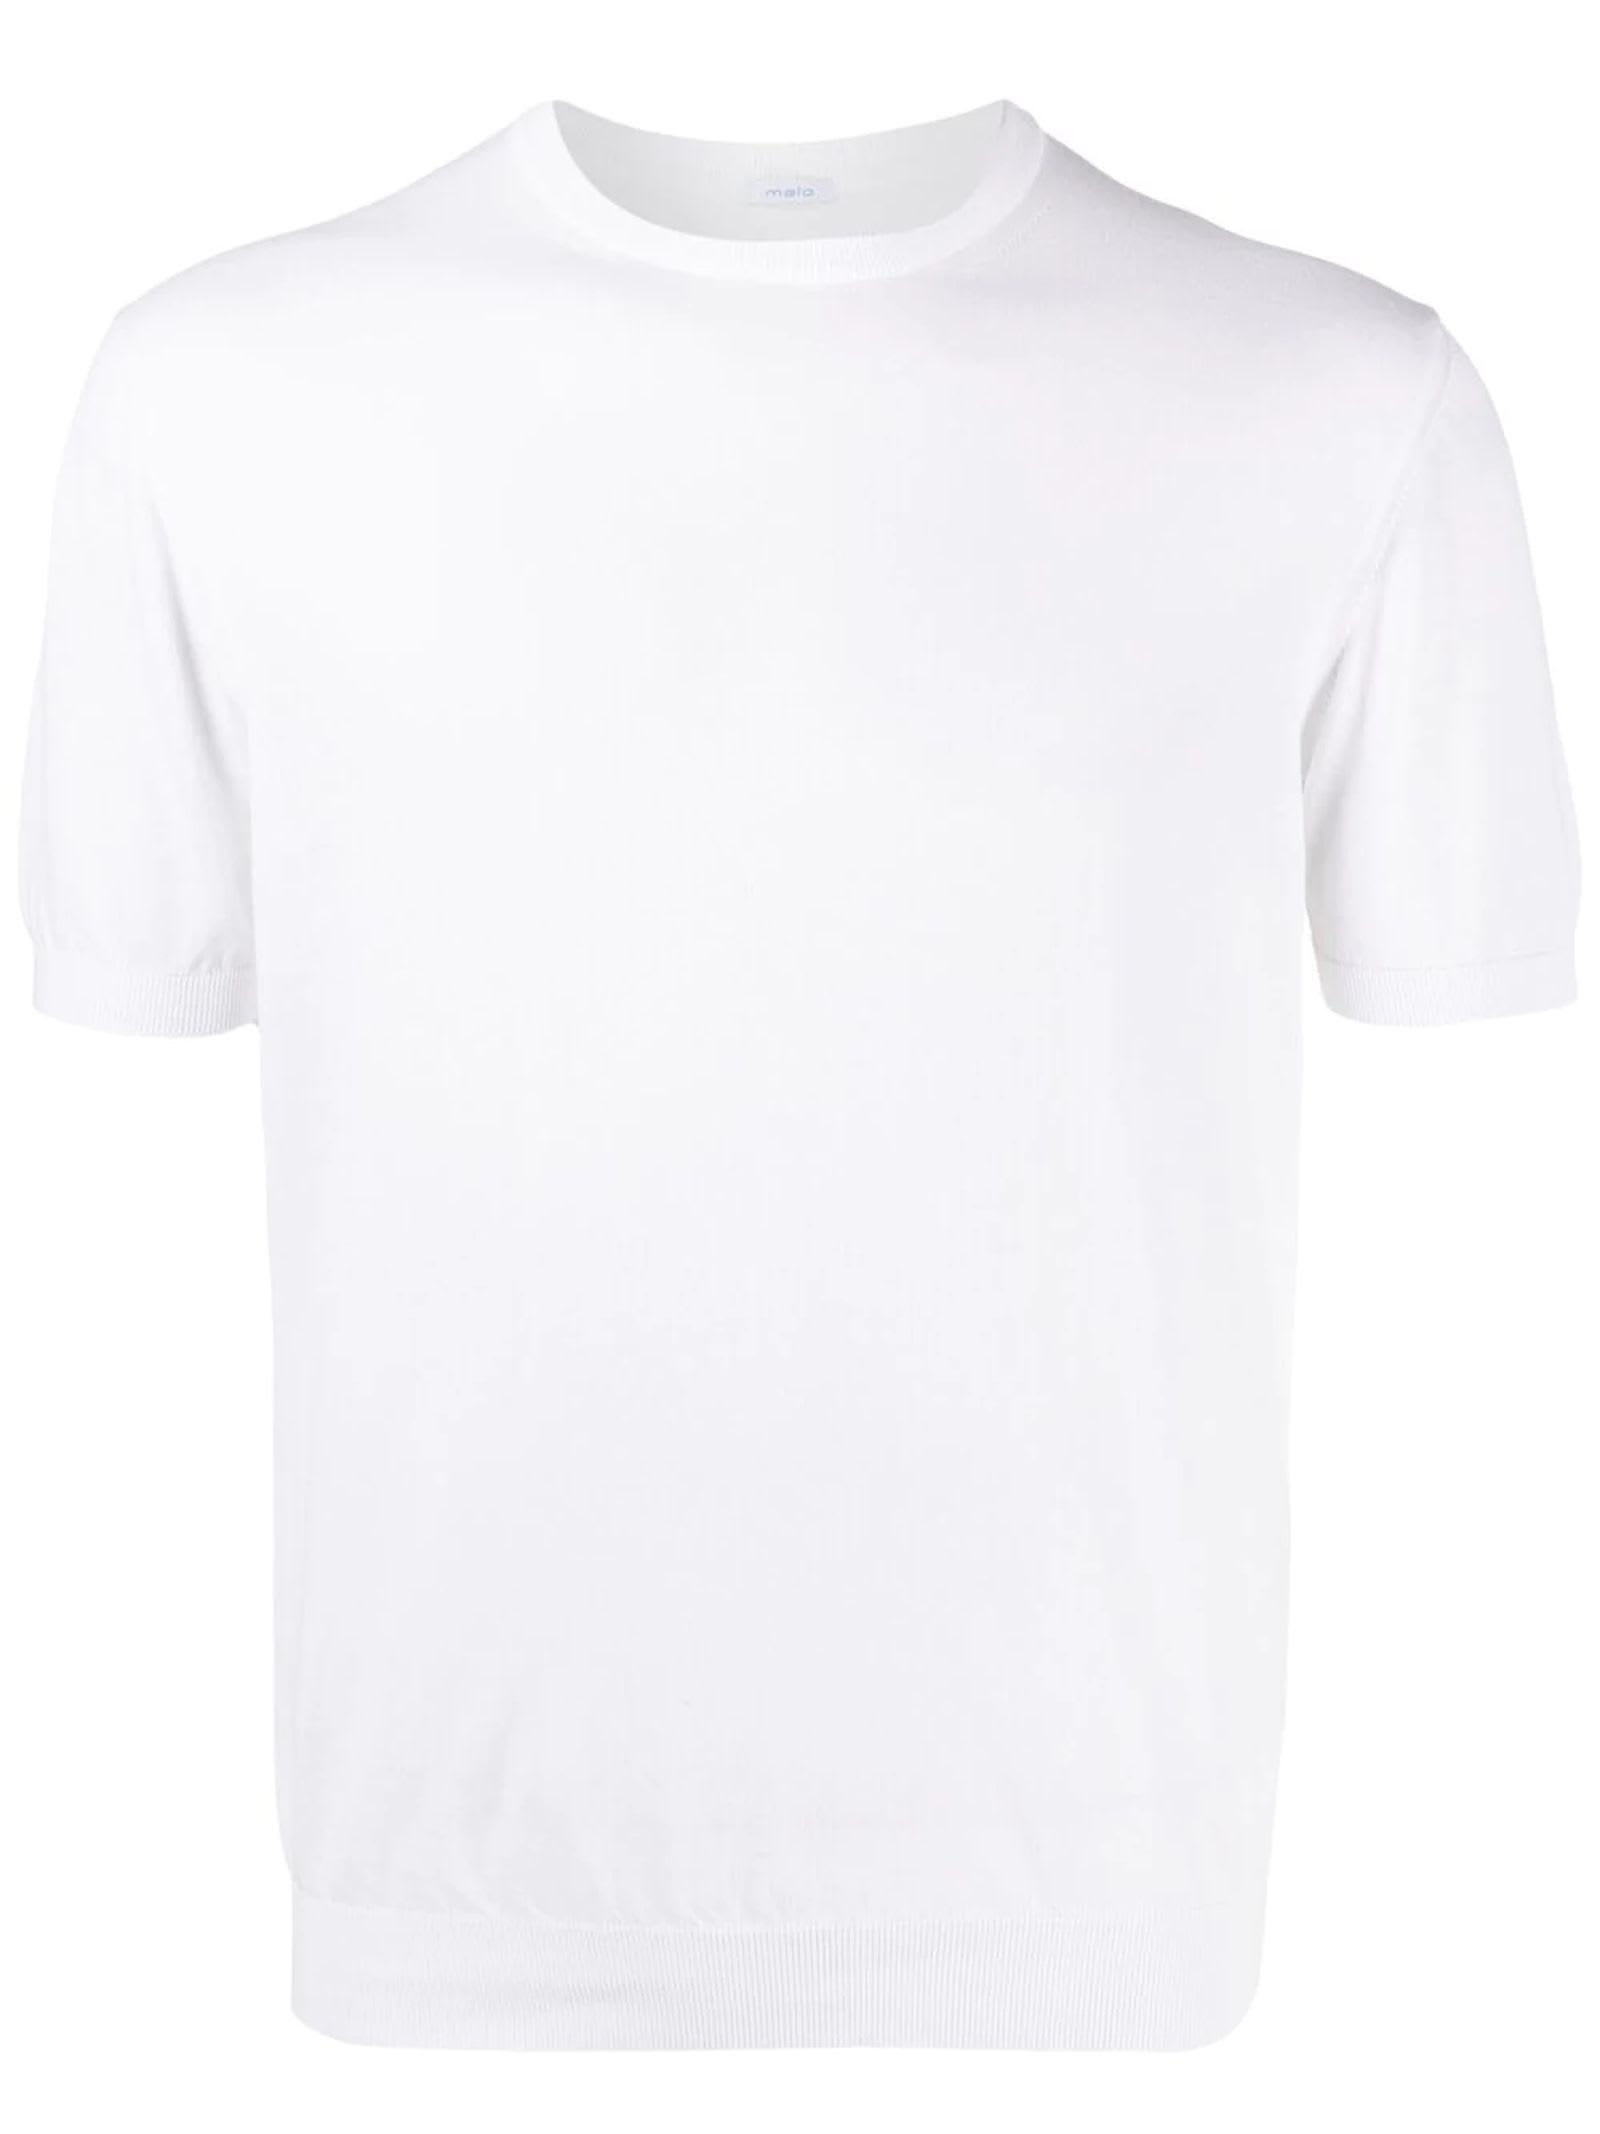 Malo White Cotton T-shirt